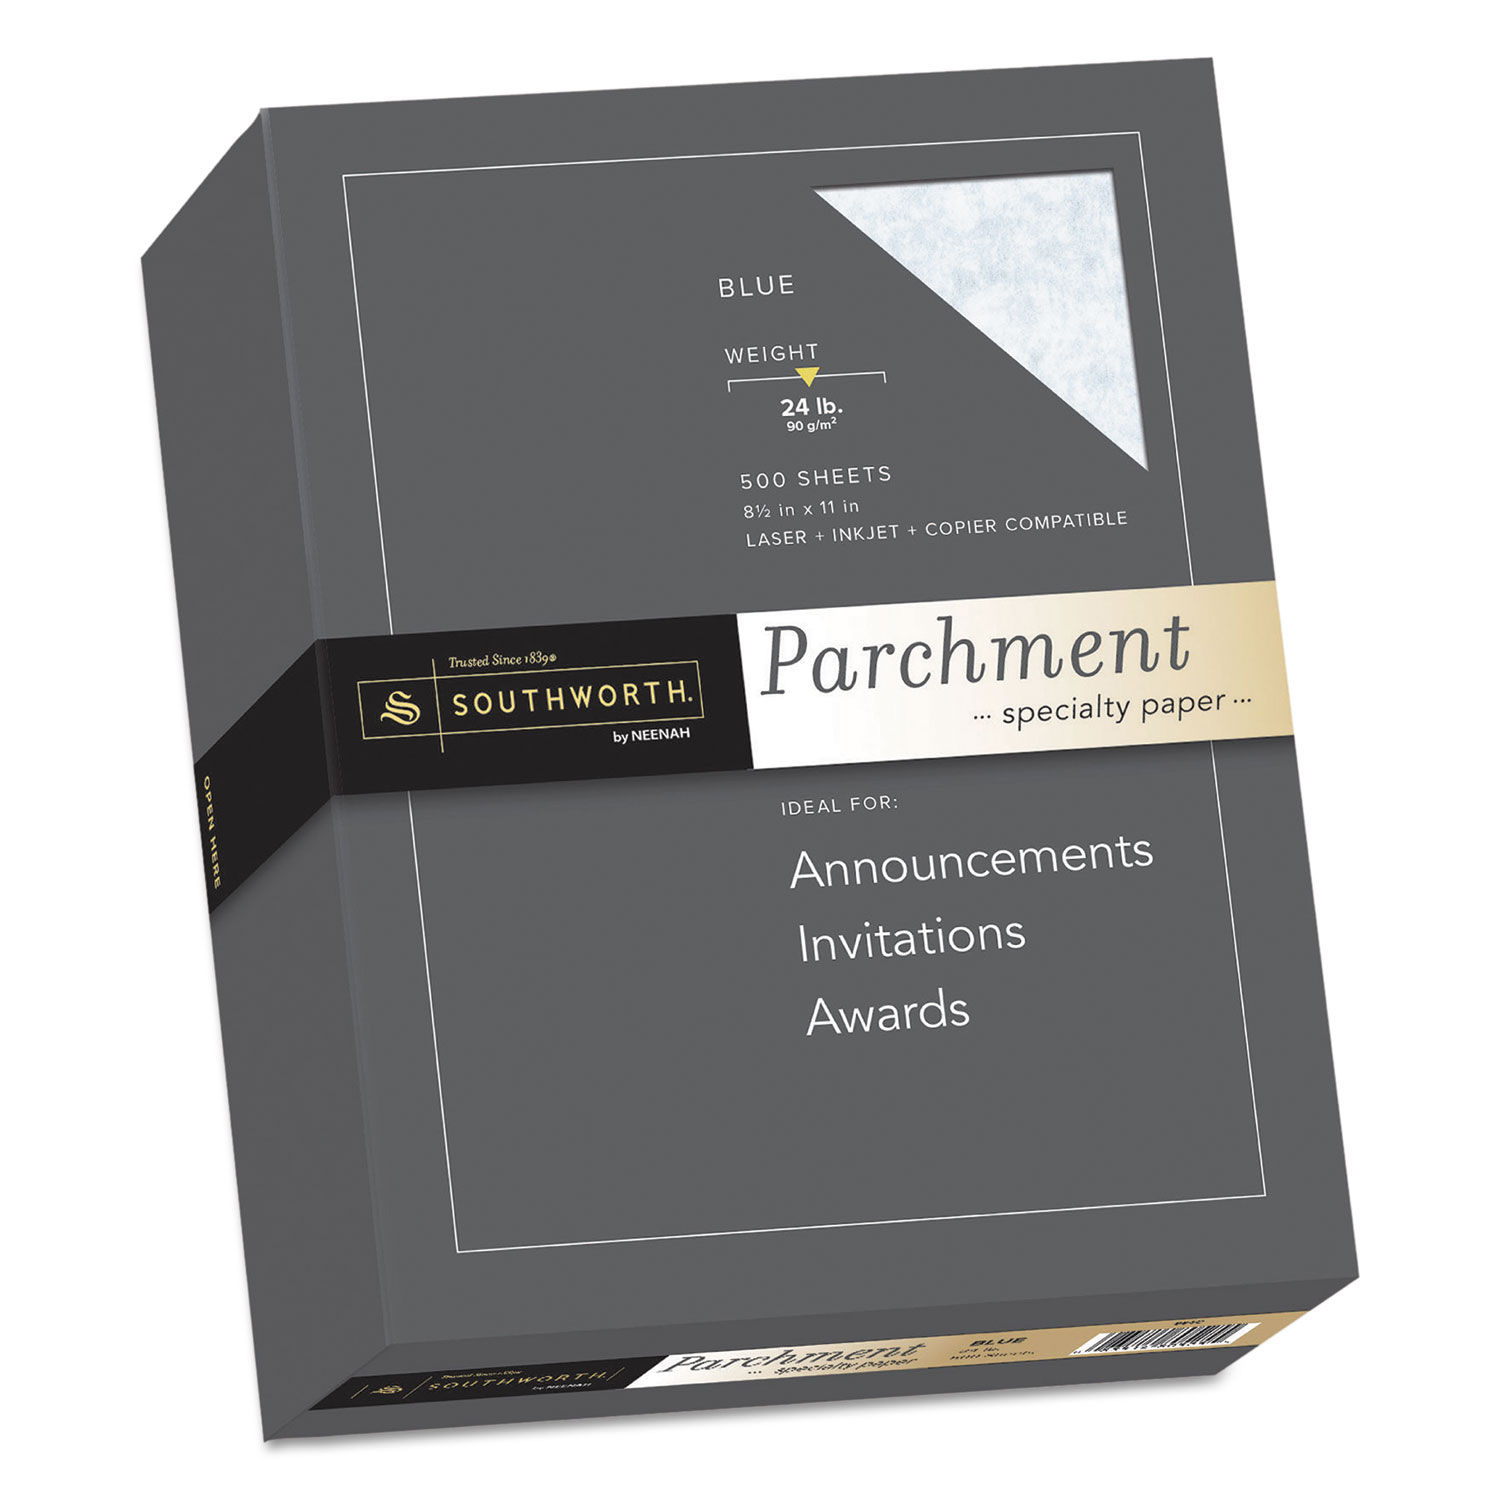 Parchment Specialty Paper by Southworthandreg; SOU964C